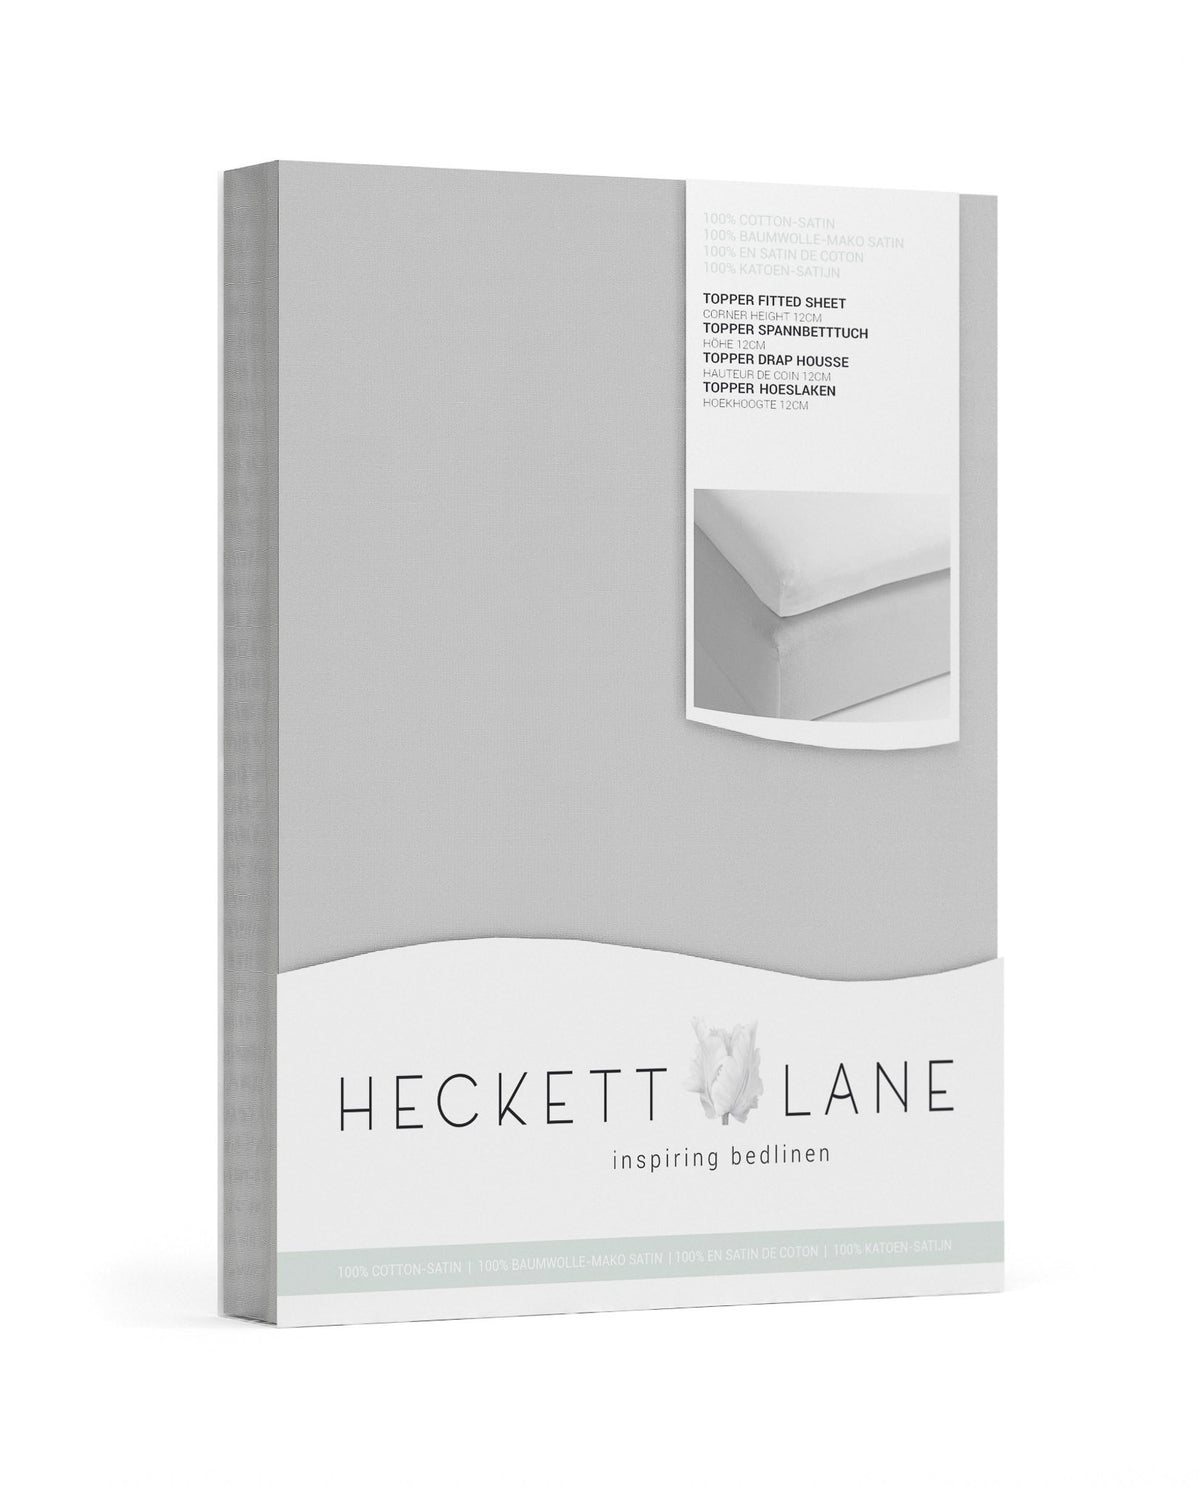 TOPPER HOESLAKEN - Katoen satijn (250TC) wit topper hoeslaken HECKETTLANE 90/200+12 cm Grey 